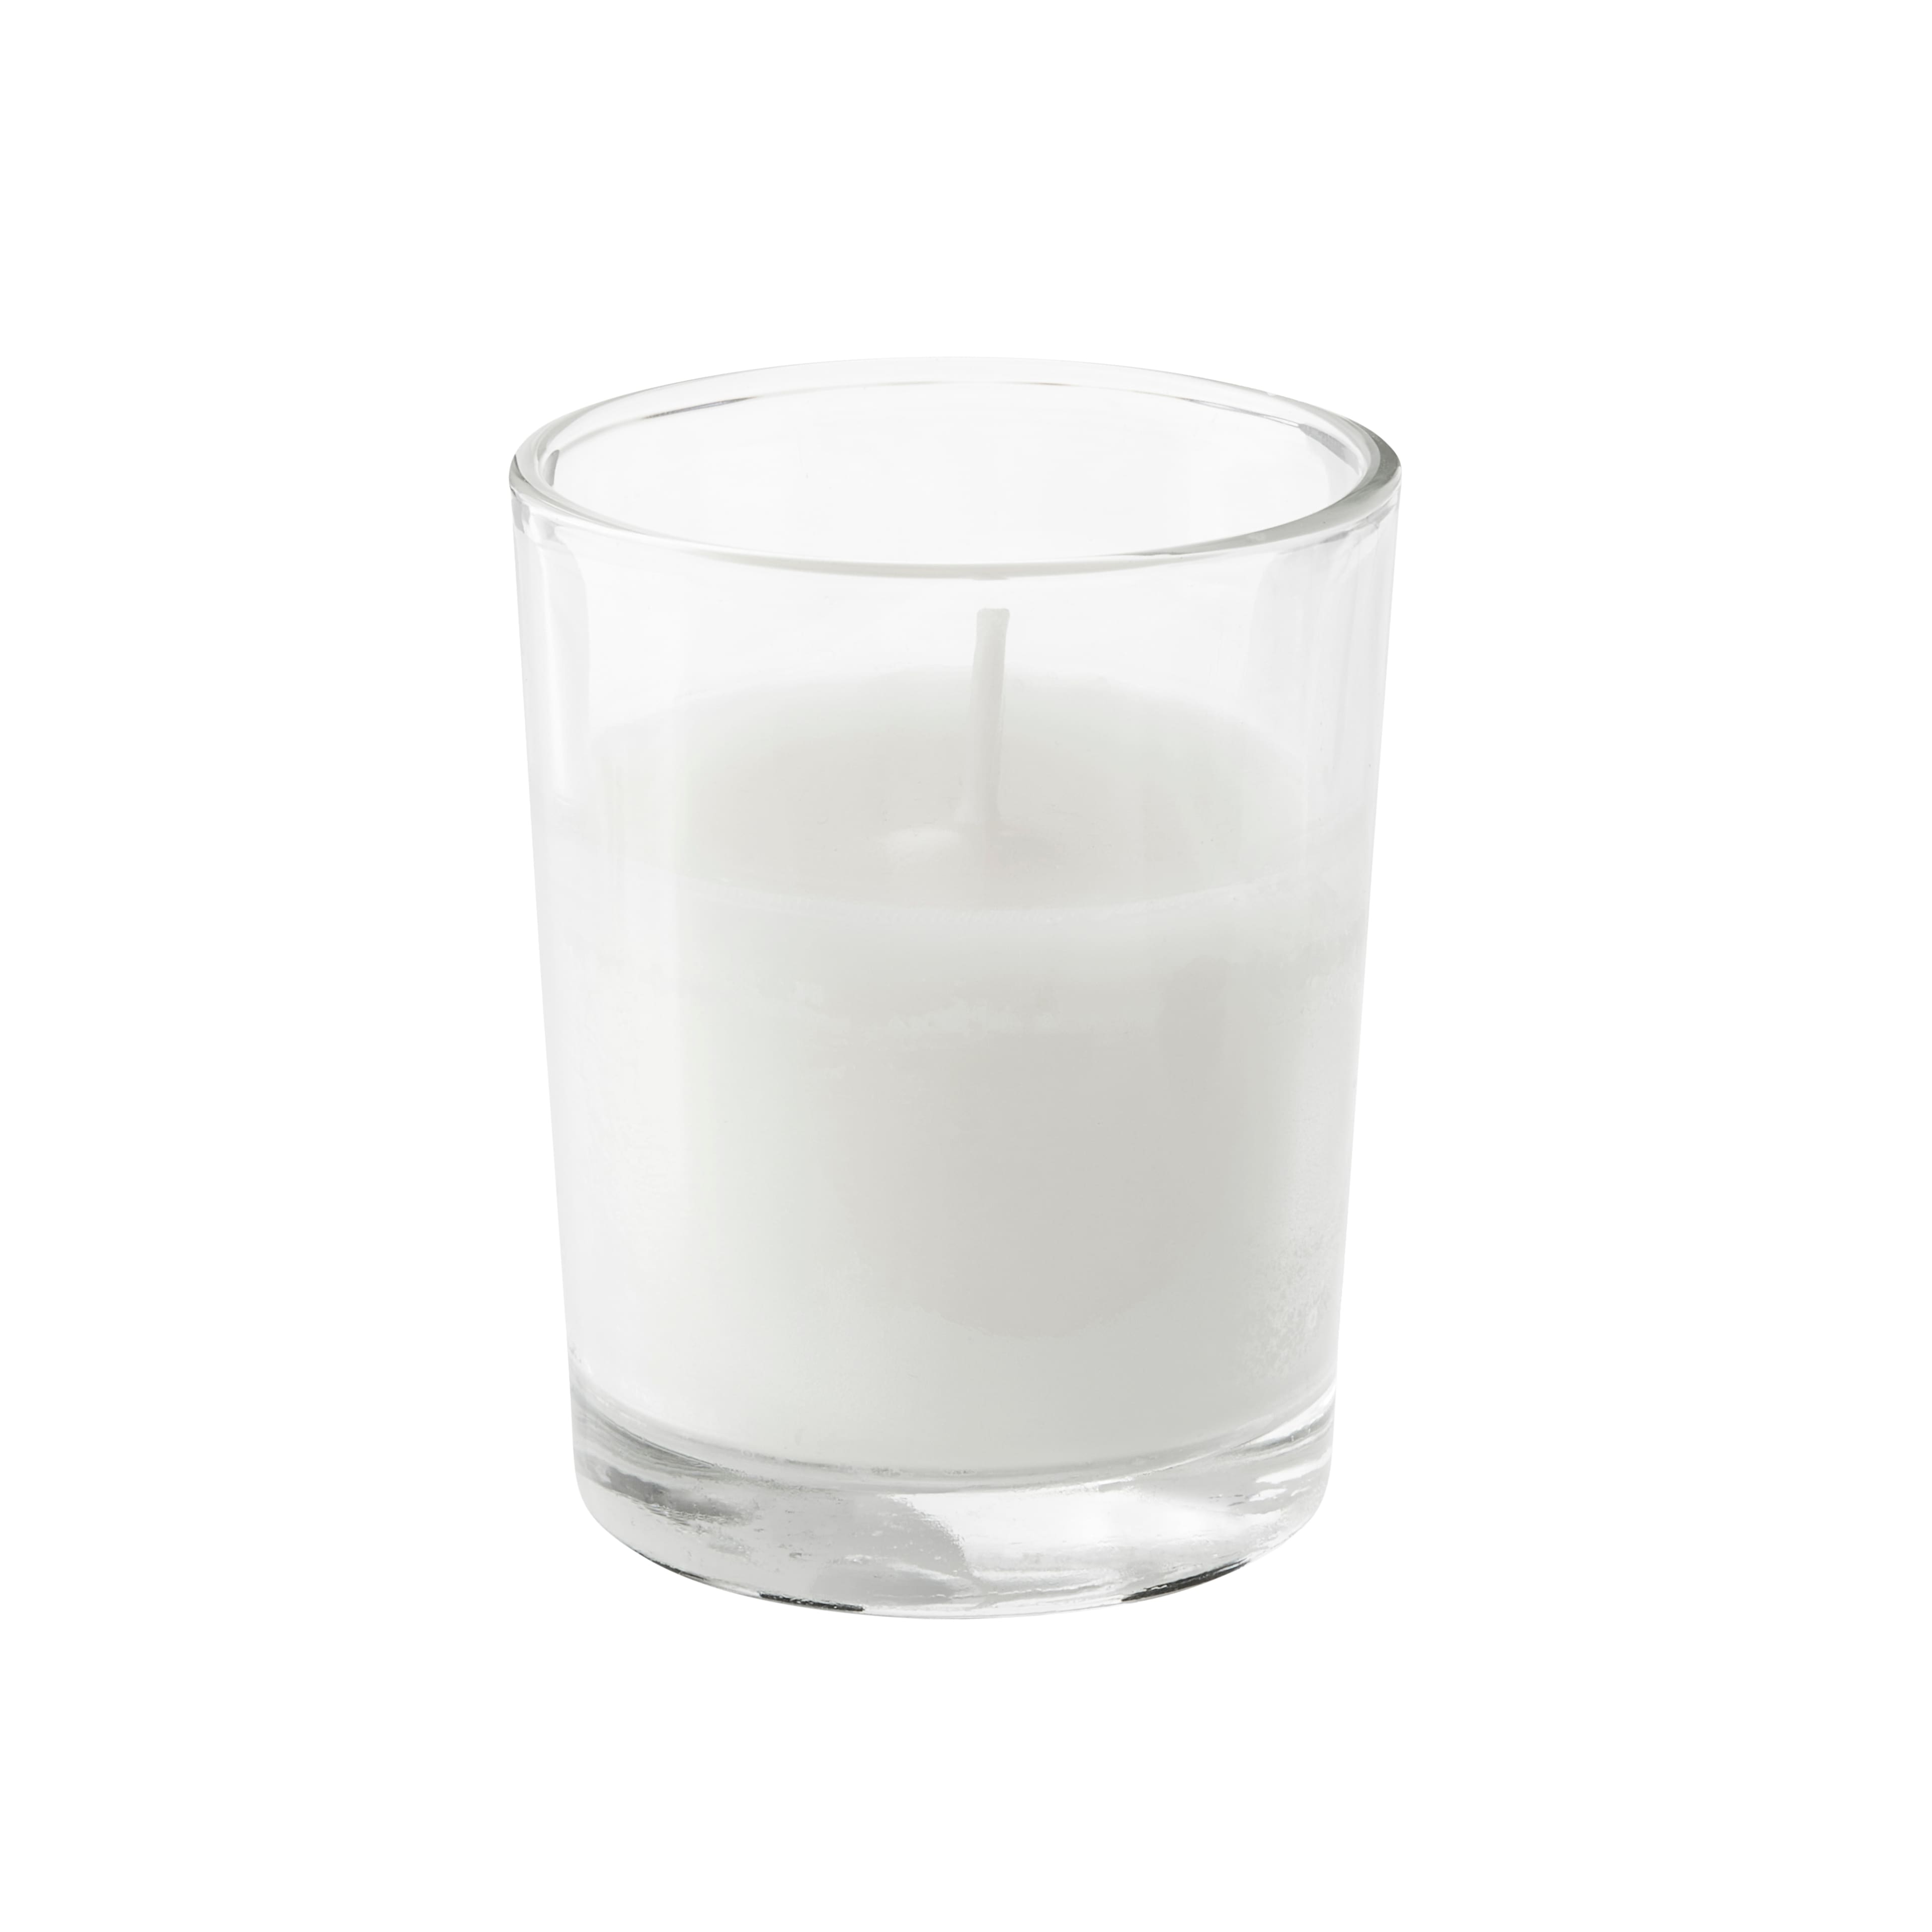 Basic Elements&#x2122; Glass Votive Candles by Ashland&#xAE;